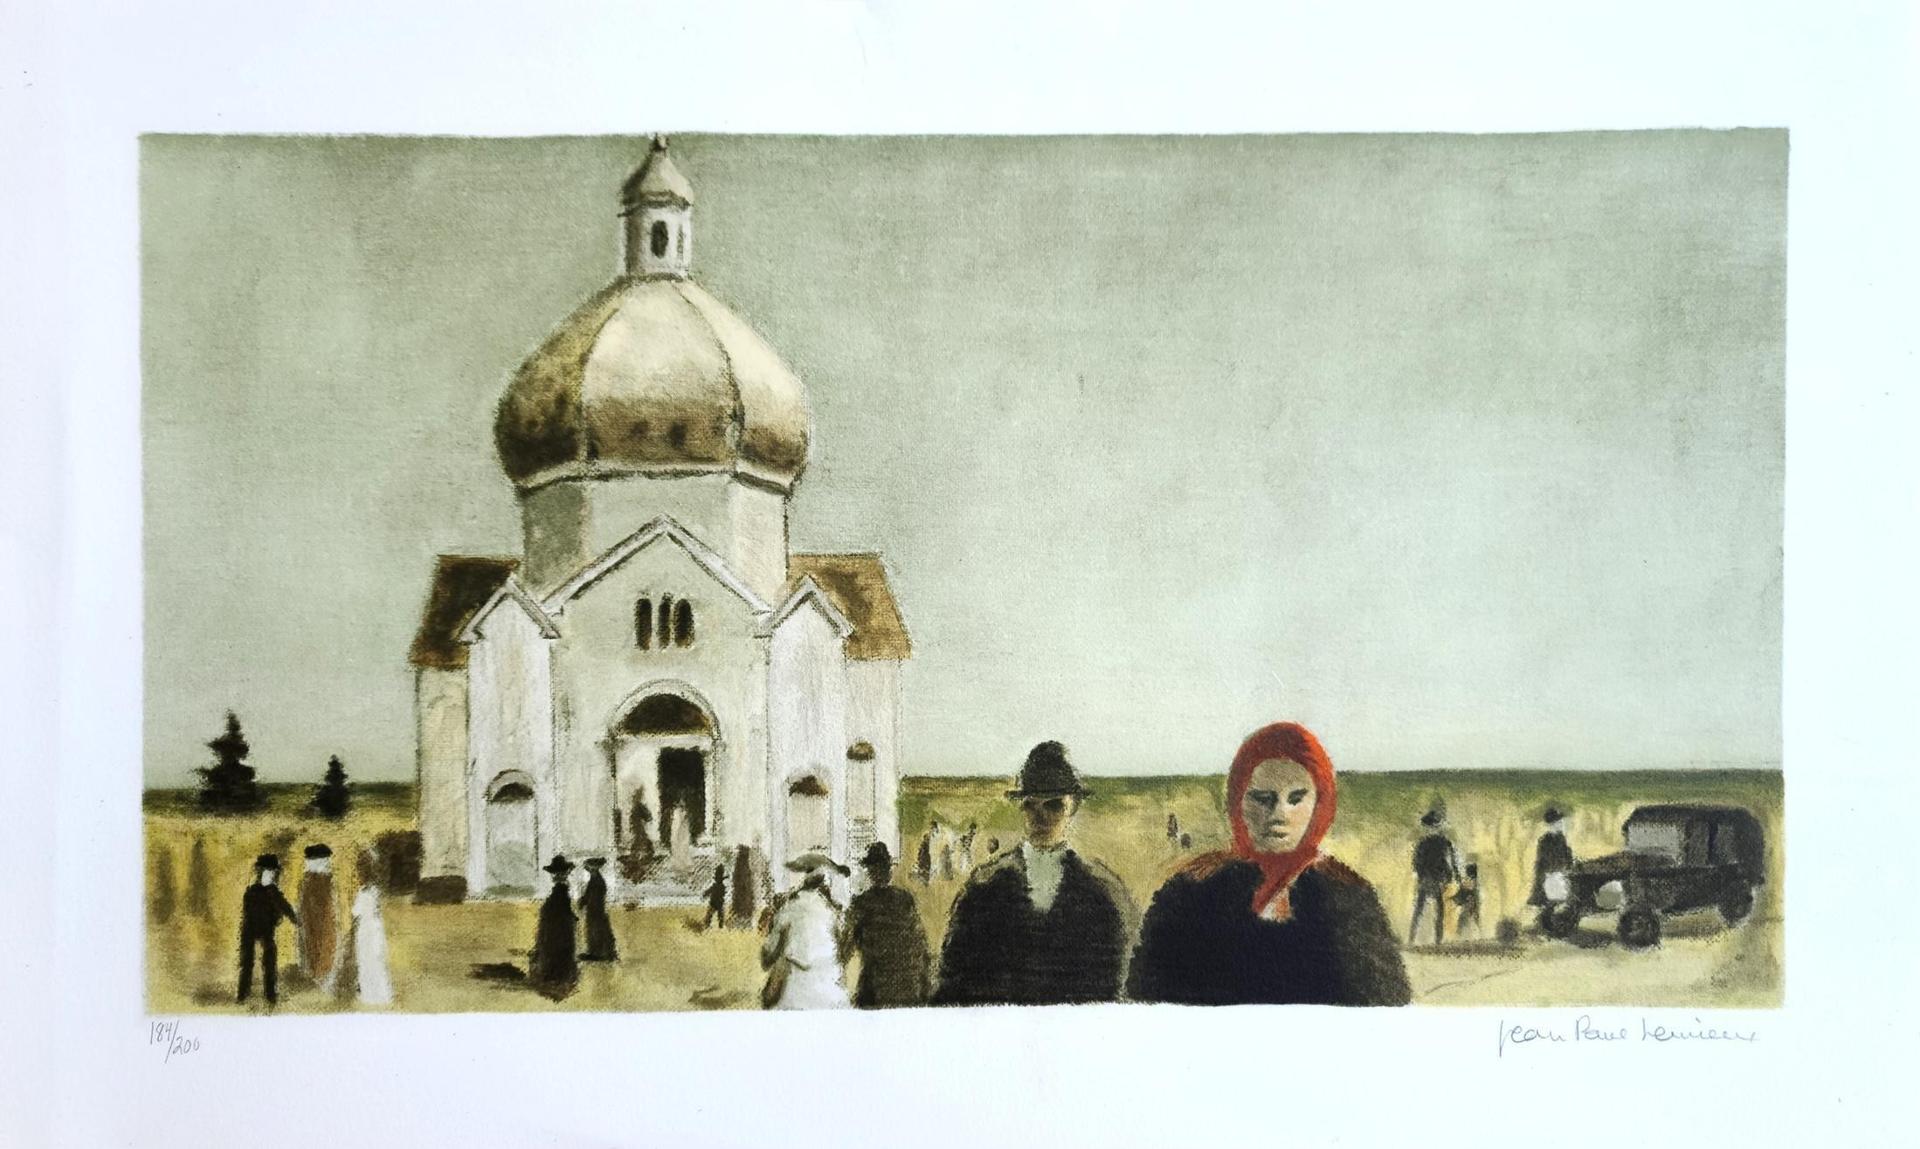 Jean Paul Lemieux (1904-1990) - Sans titre (L'Église orthodoxe) (tirée du livre illustré «La petite poule d'eau»), 1971